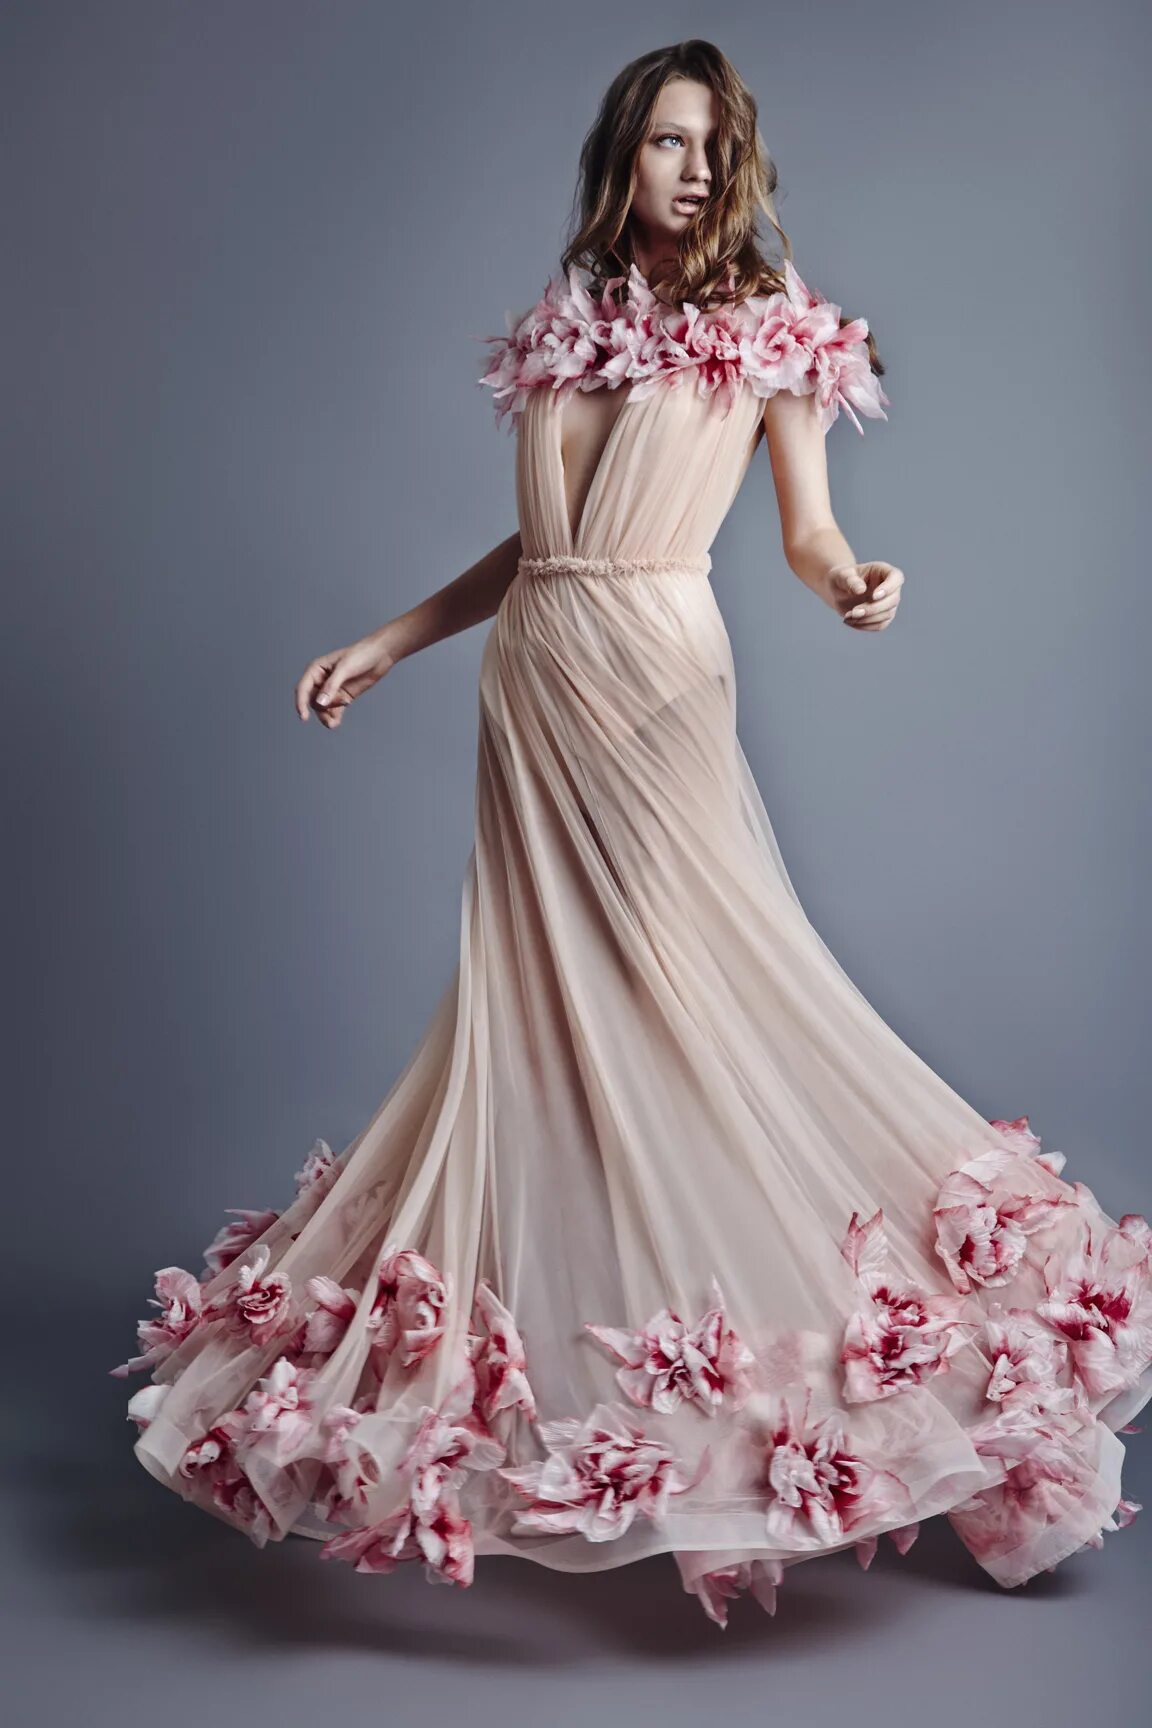 Collection тон. Jean Louis Sabaji. Необычные платья. Дизайнерские платья. Необычные вечерние платья.